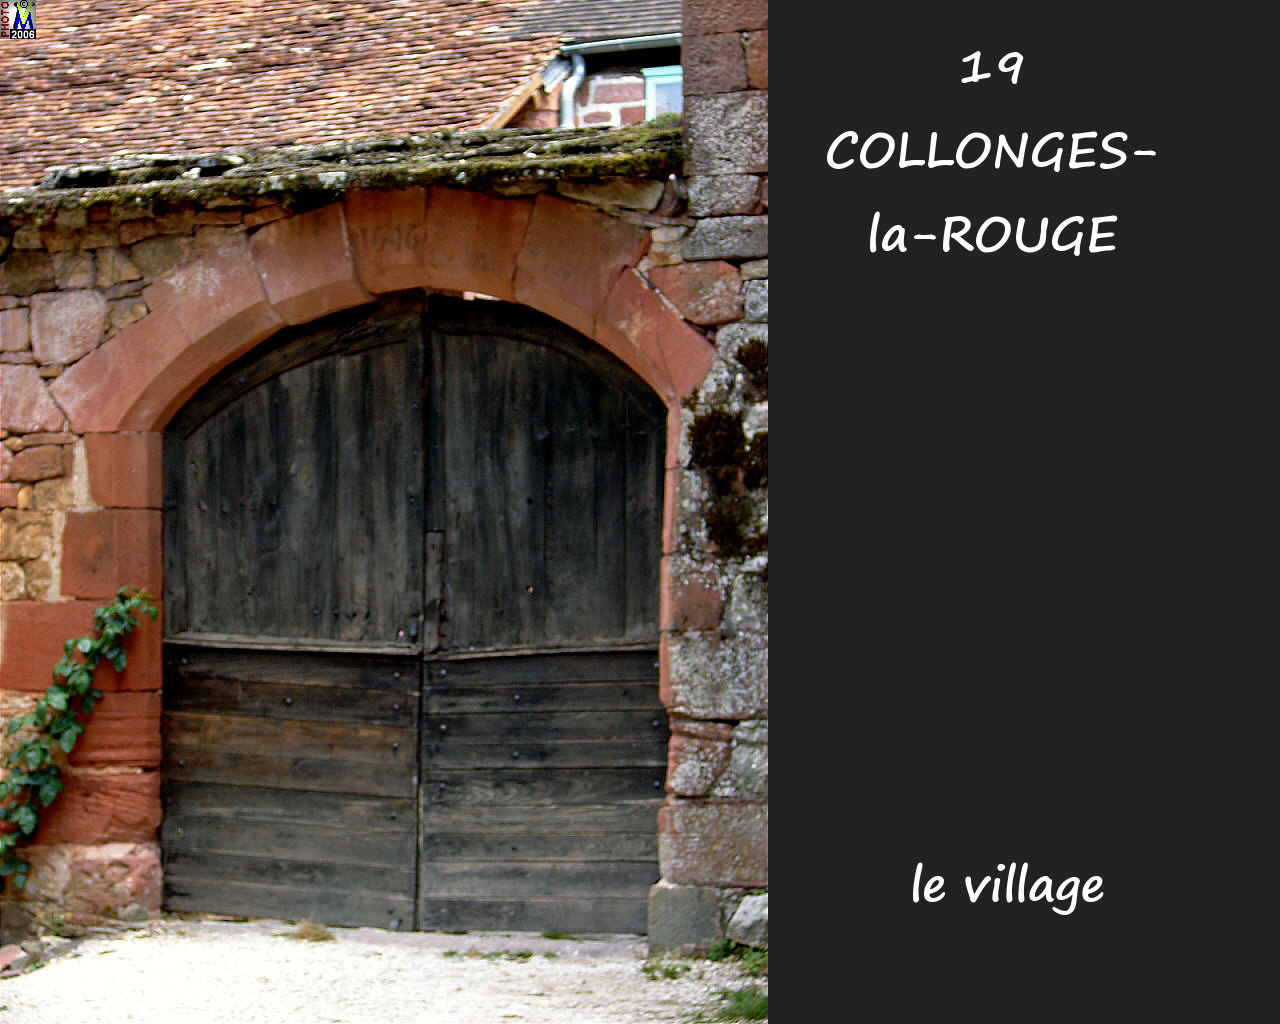 19COLLONGES-ROUGE_village_146.jpg